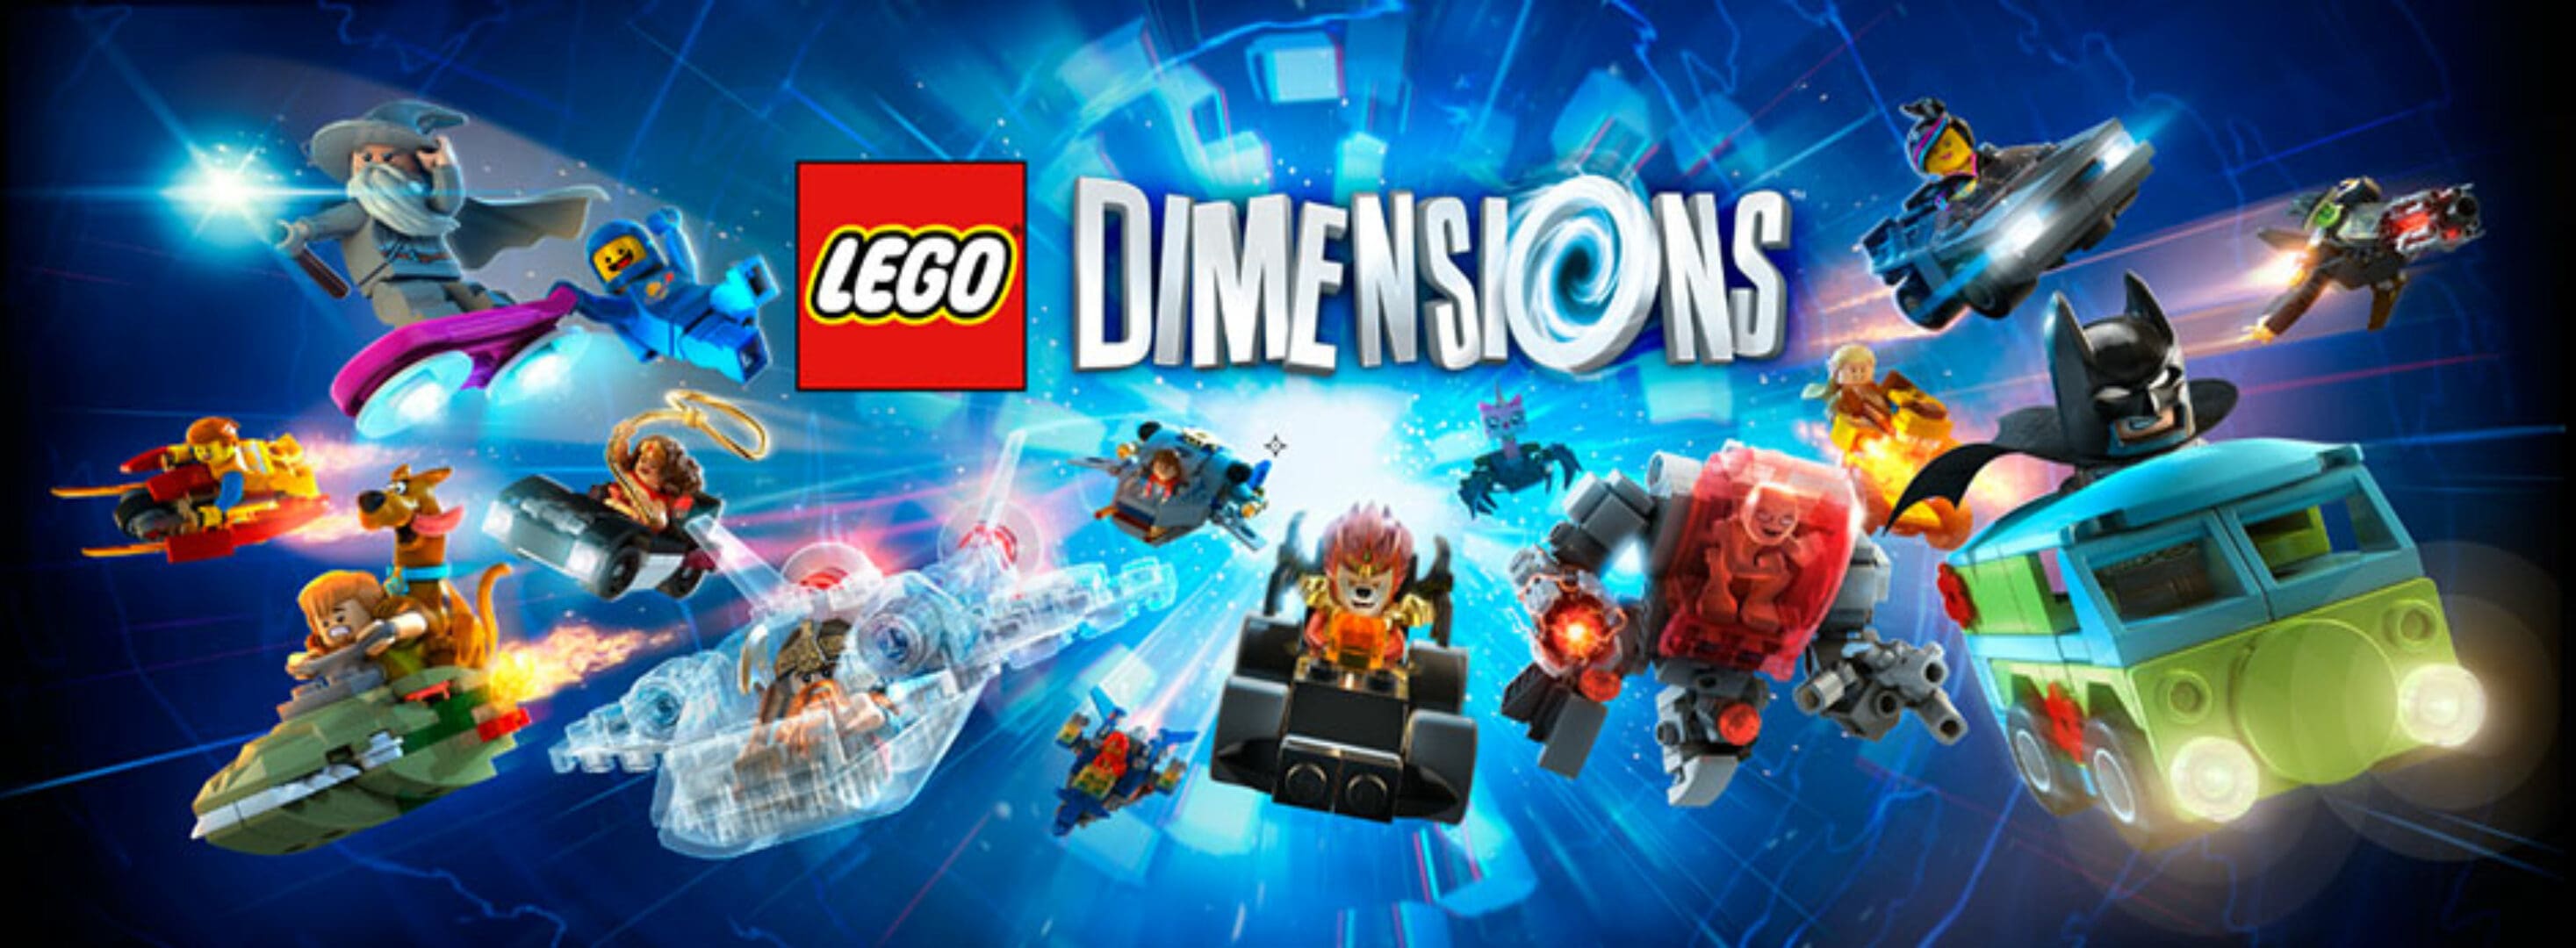 More Dimensions of Fun in LEGO Dimensions